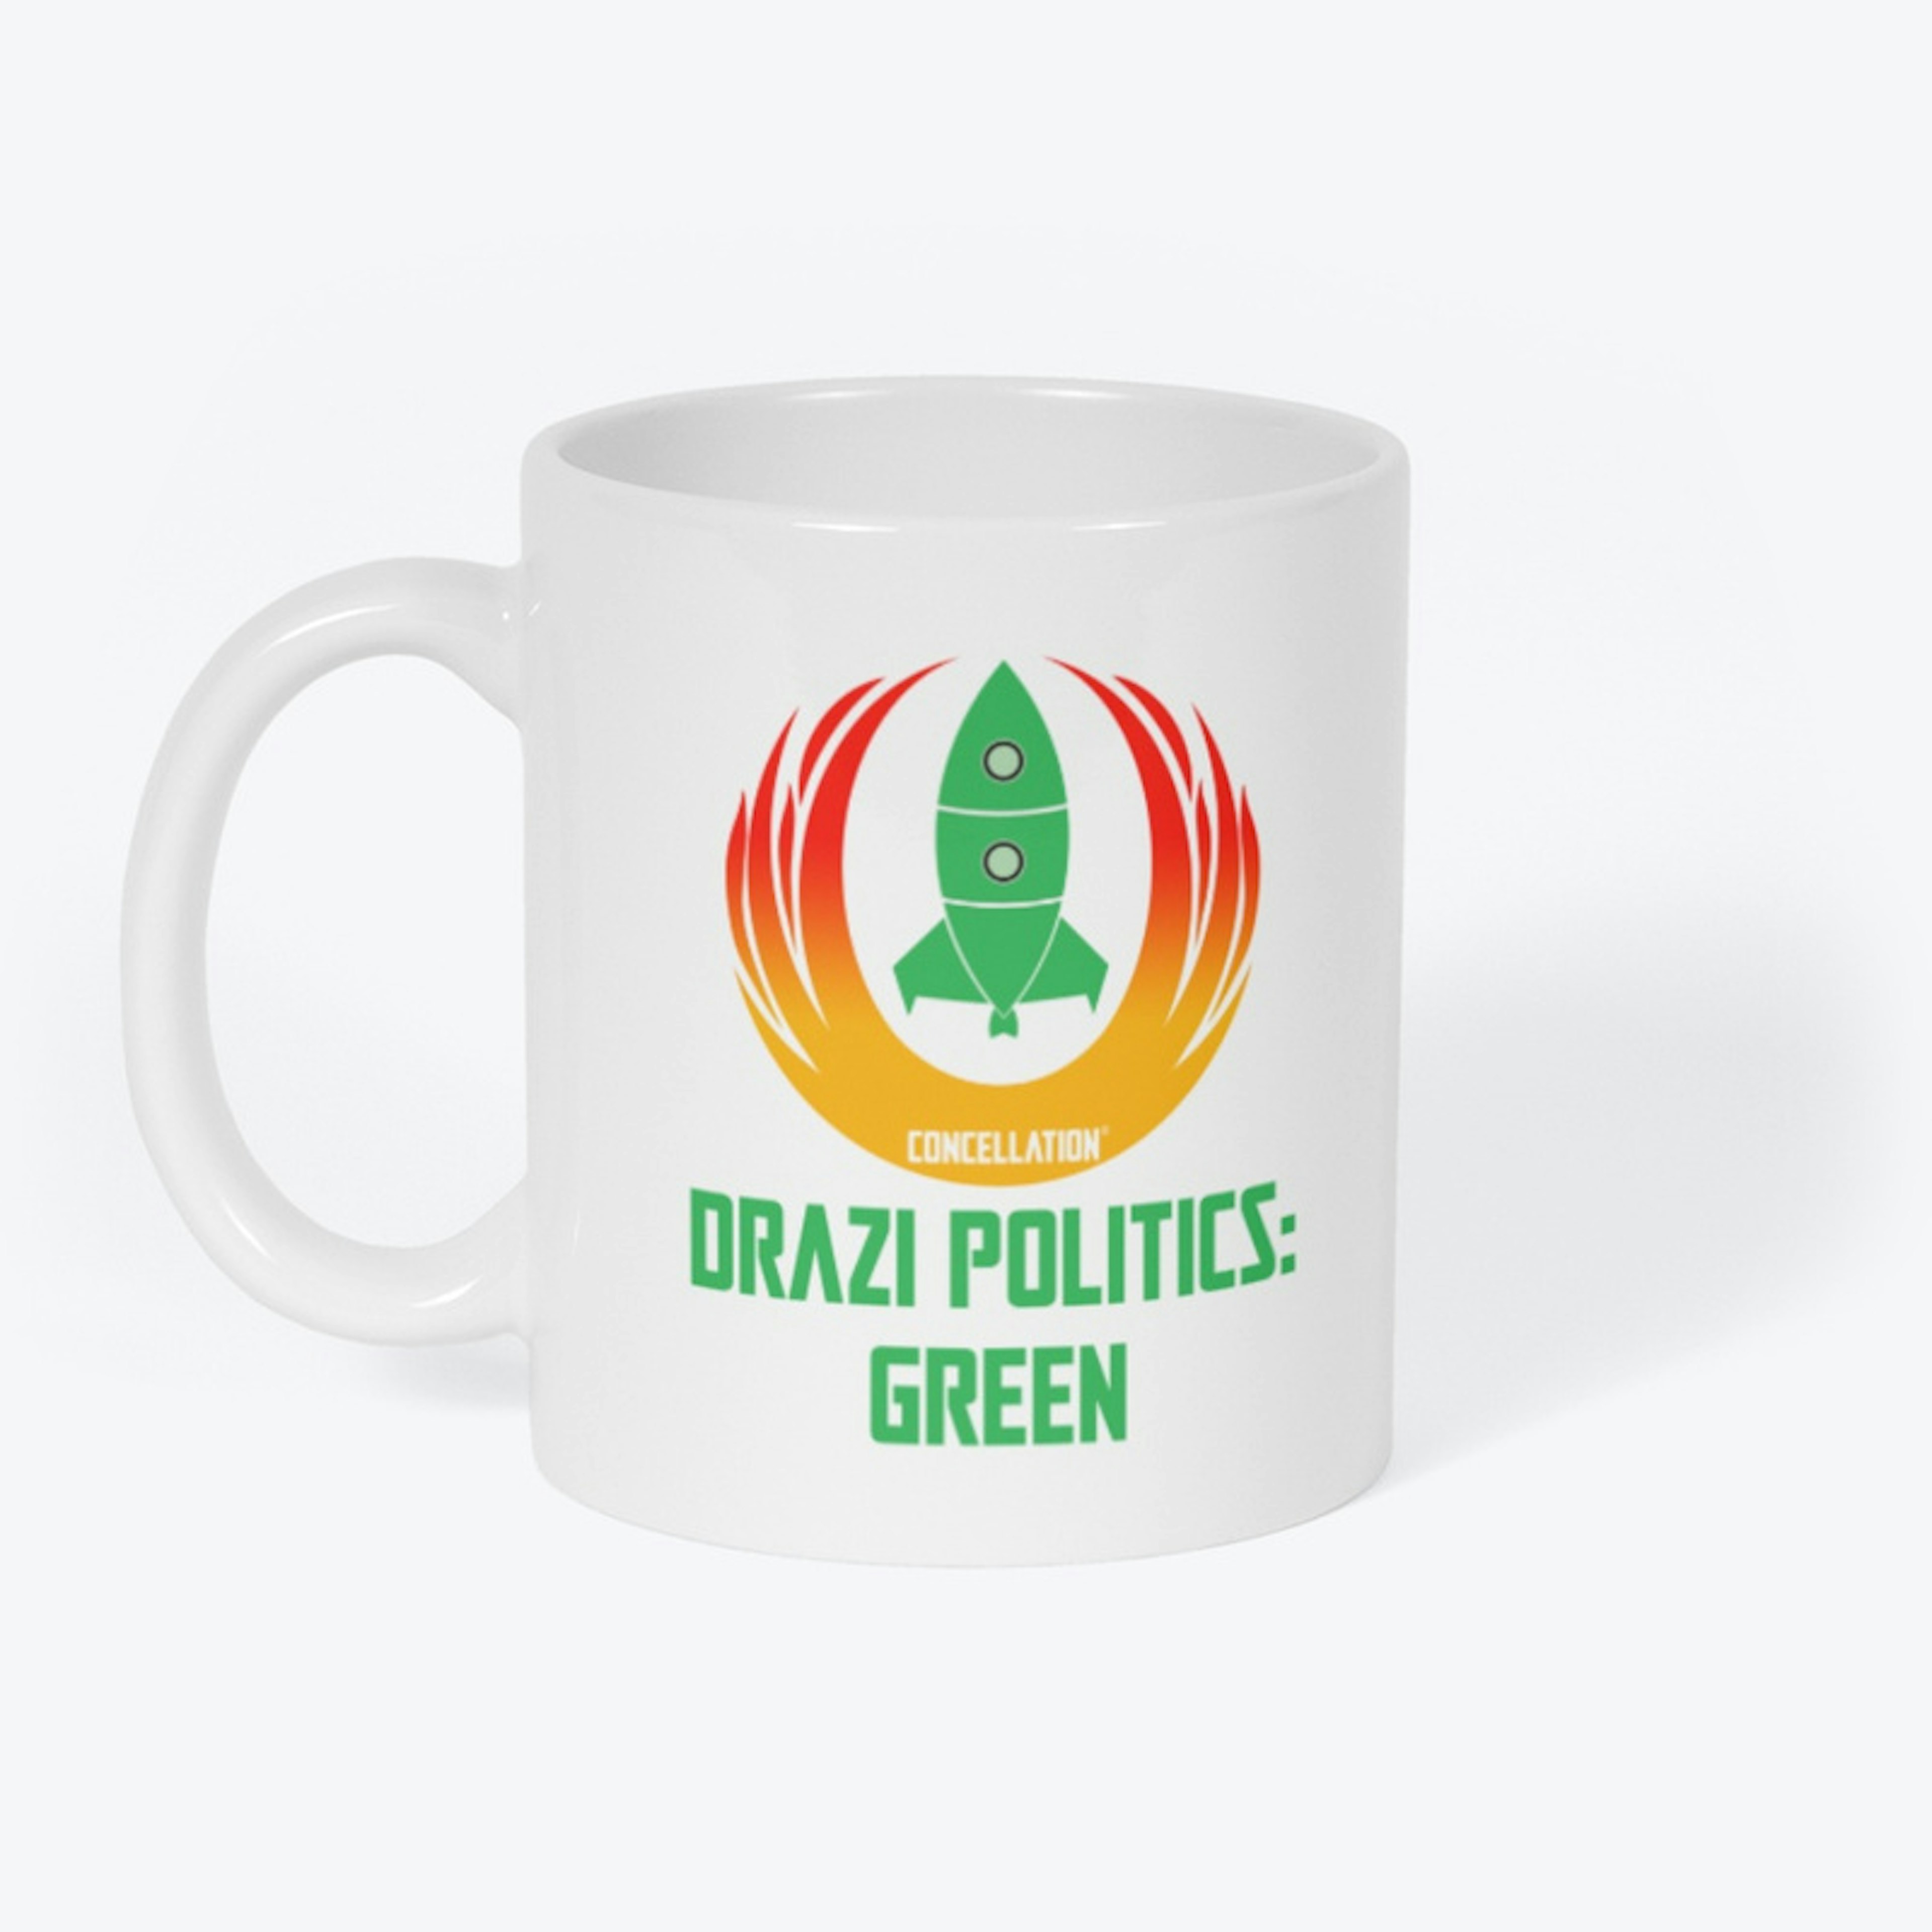 Drazi Politics: Green (2021 Logo)